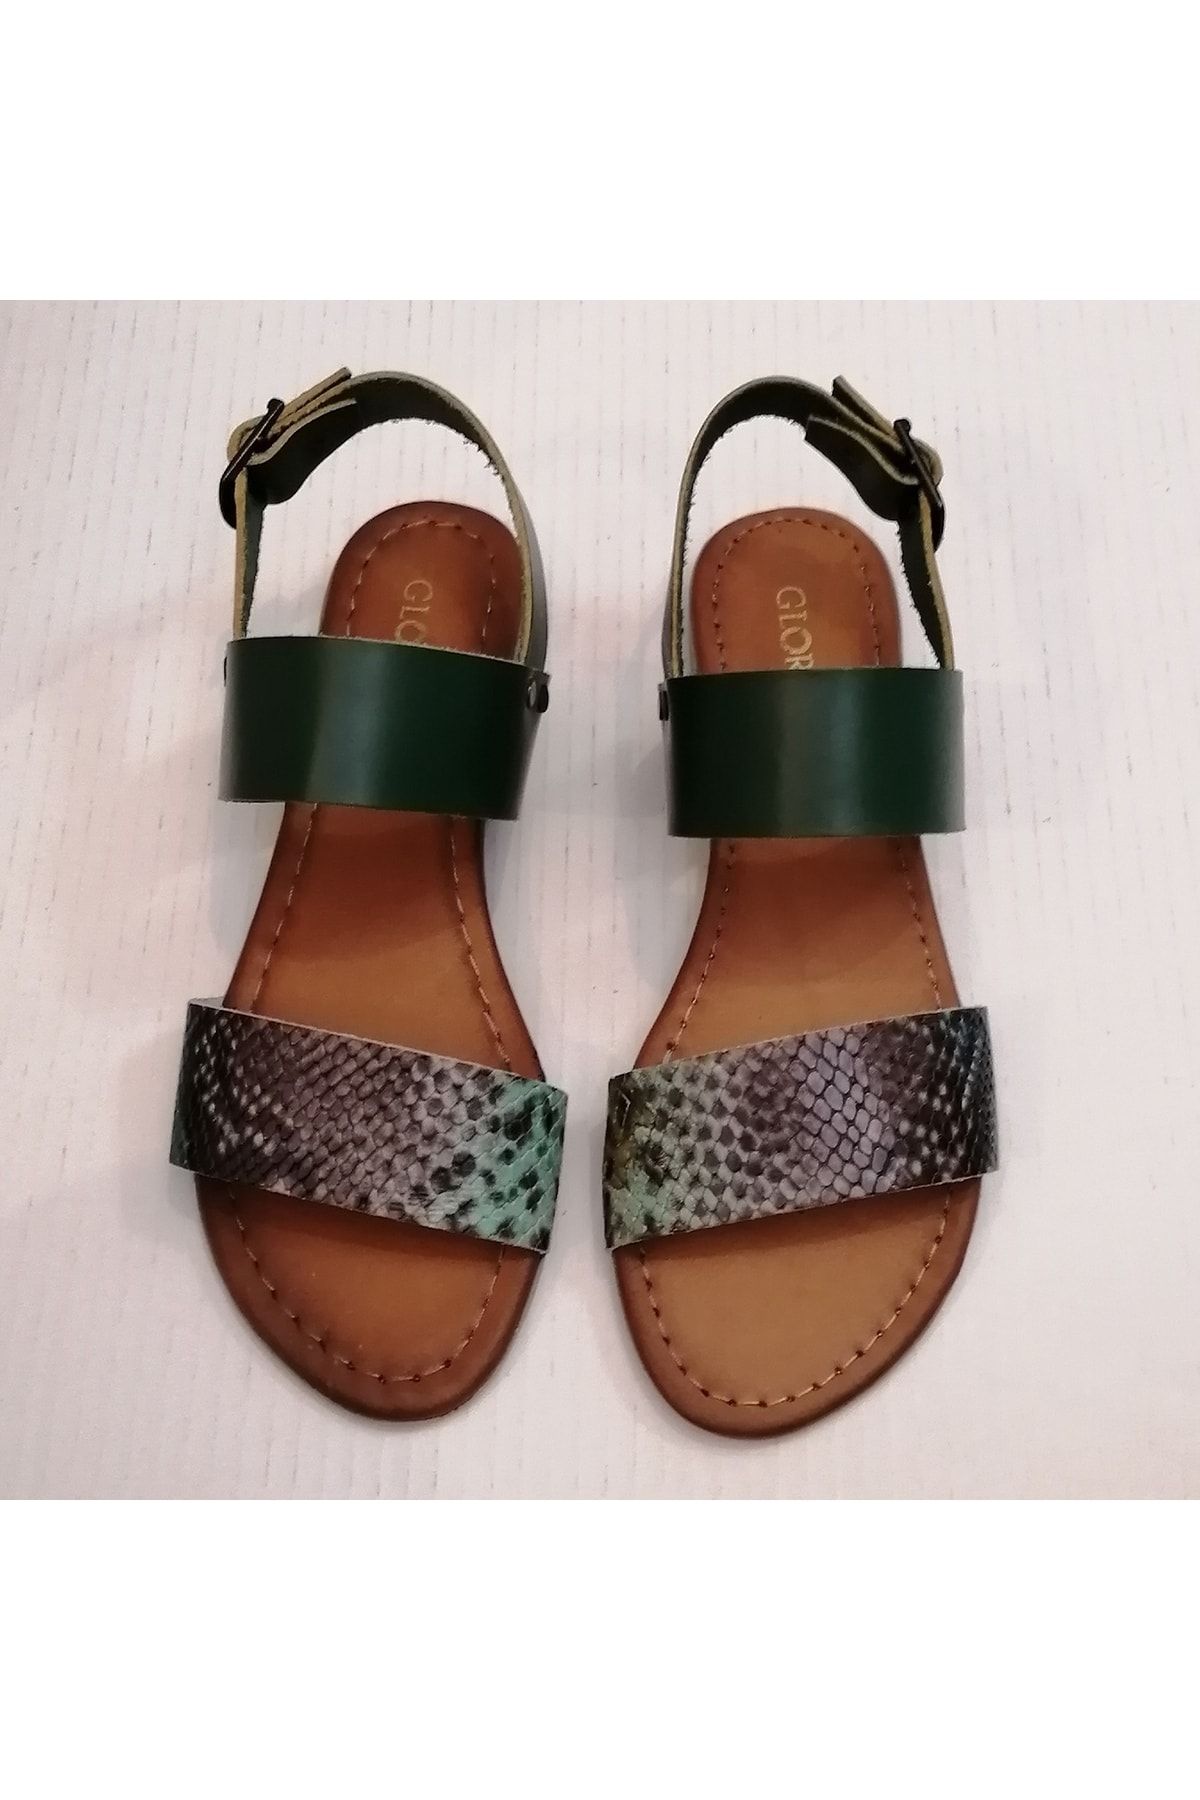 Gloria Kadın Hakiki Dana Derisi Yeşil Yılan Baskı Çift Bant Bilekten Bronz Tokalı Kauçuk Tabanlı Sandalet